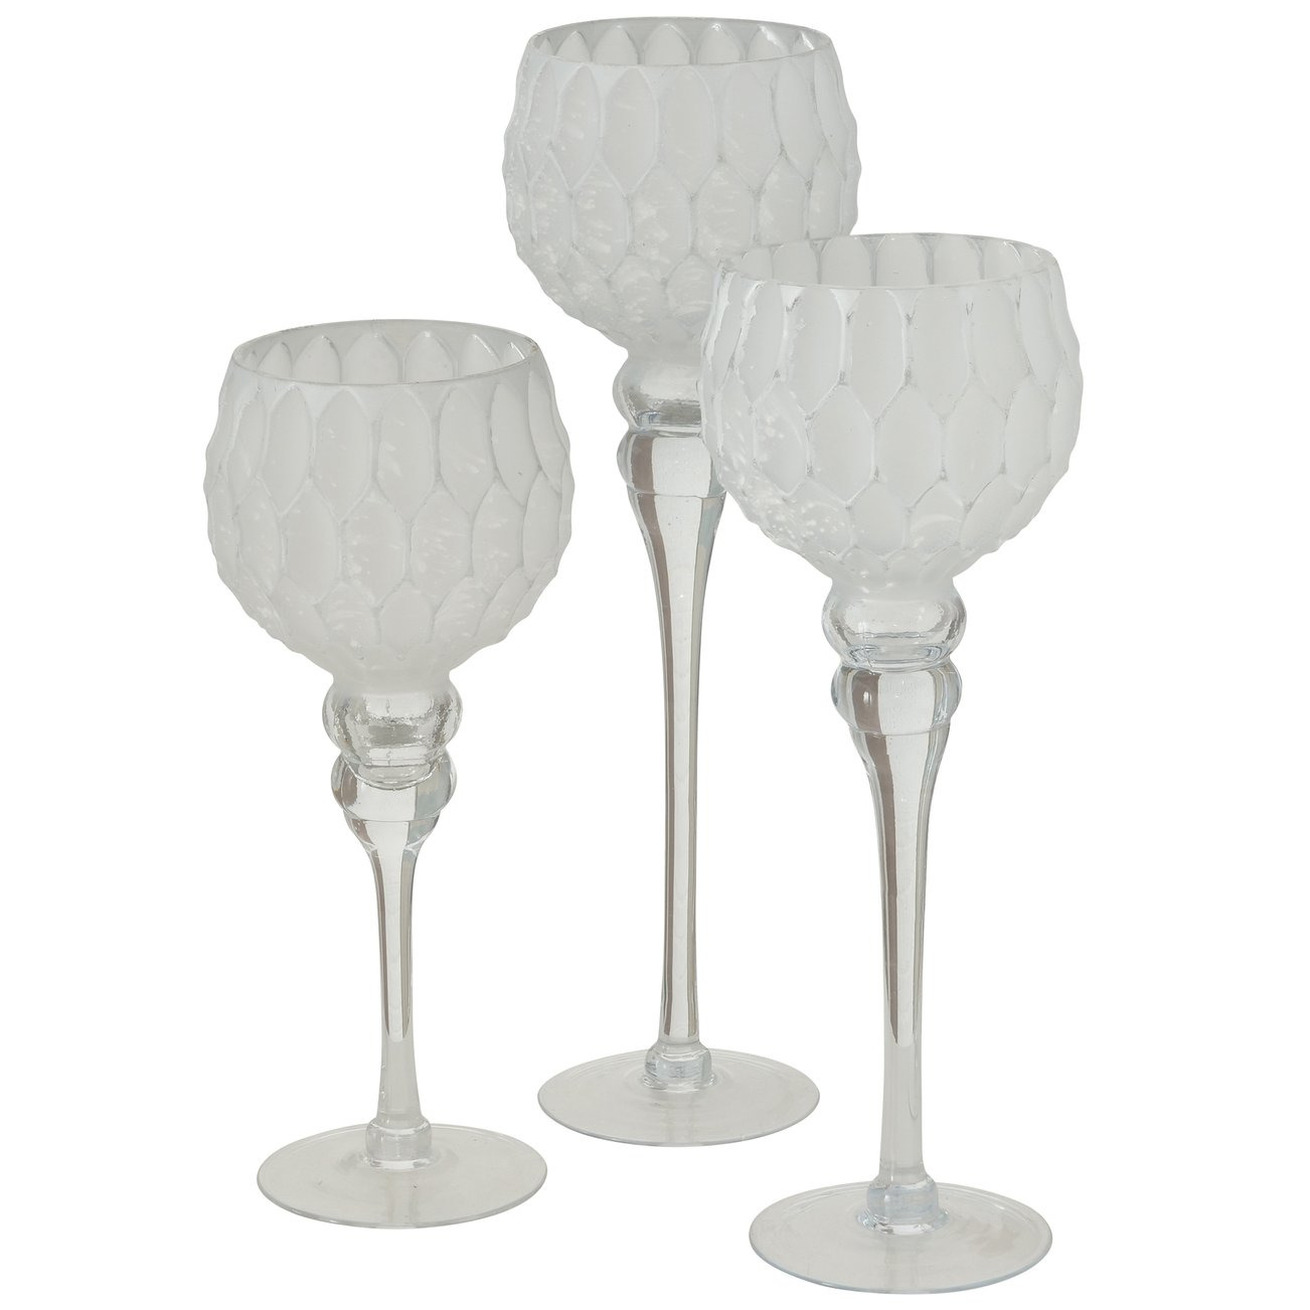 Luxe glazen design kaarsenhouders-windlichten set van 3x stuks zilver-wit 30-40 cm